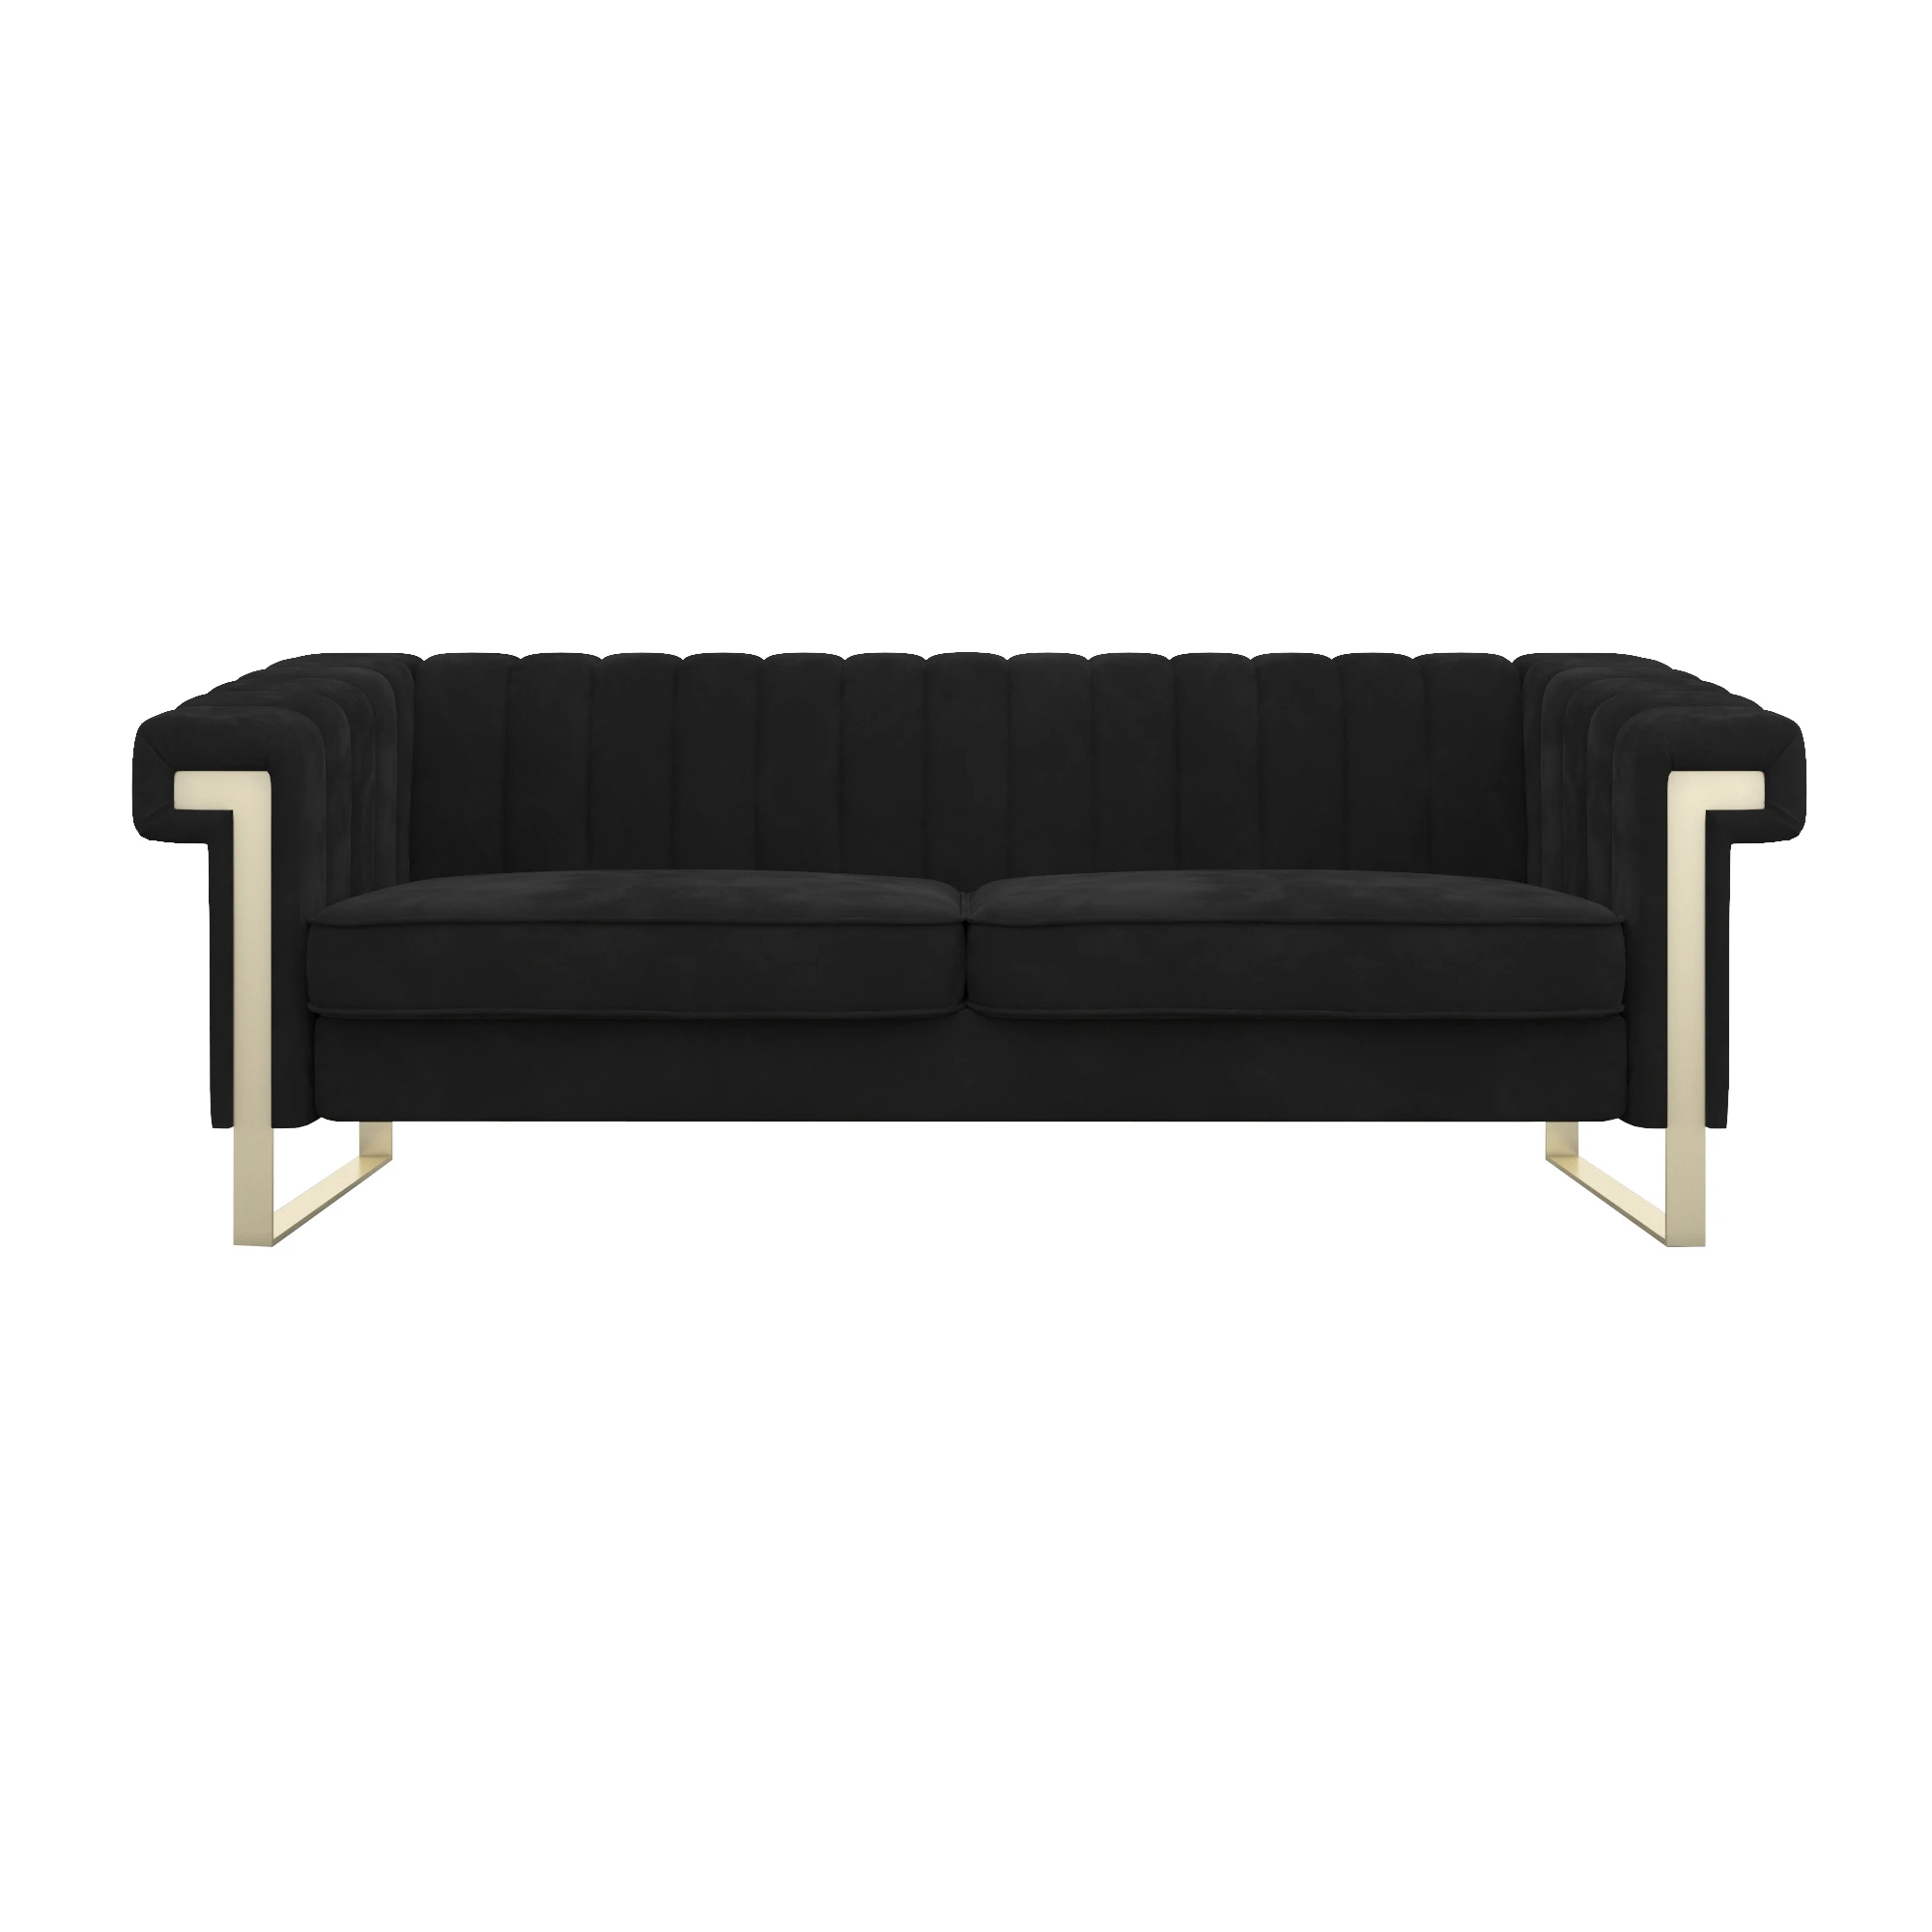 

Light Luxury Black Velvet Long Couch Living Room Sofa Chaise, Optional